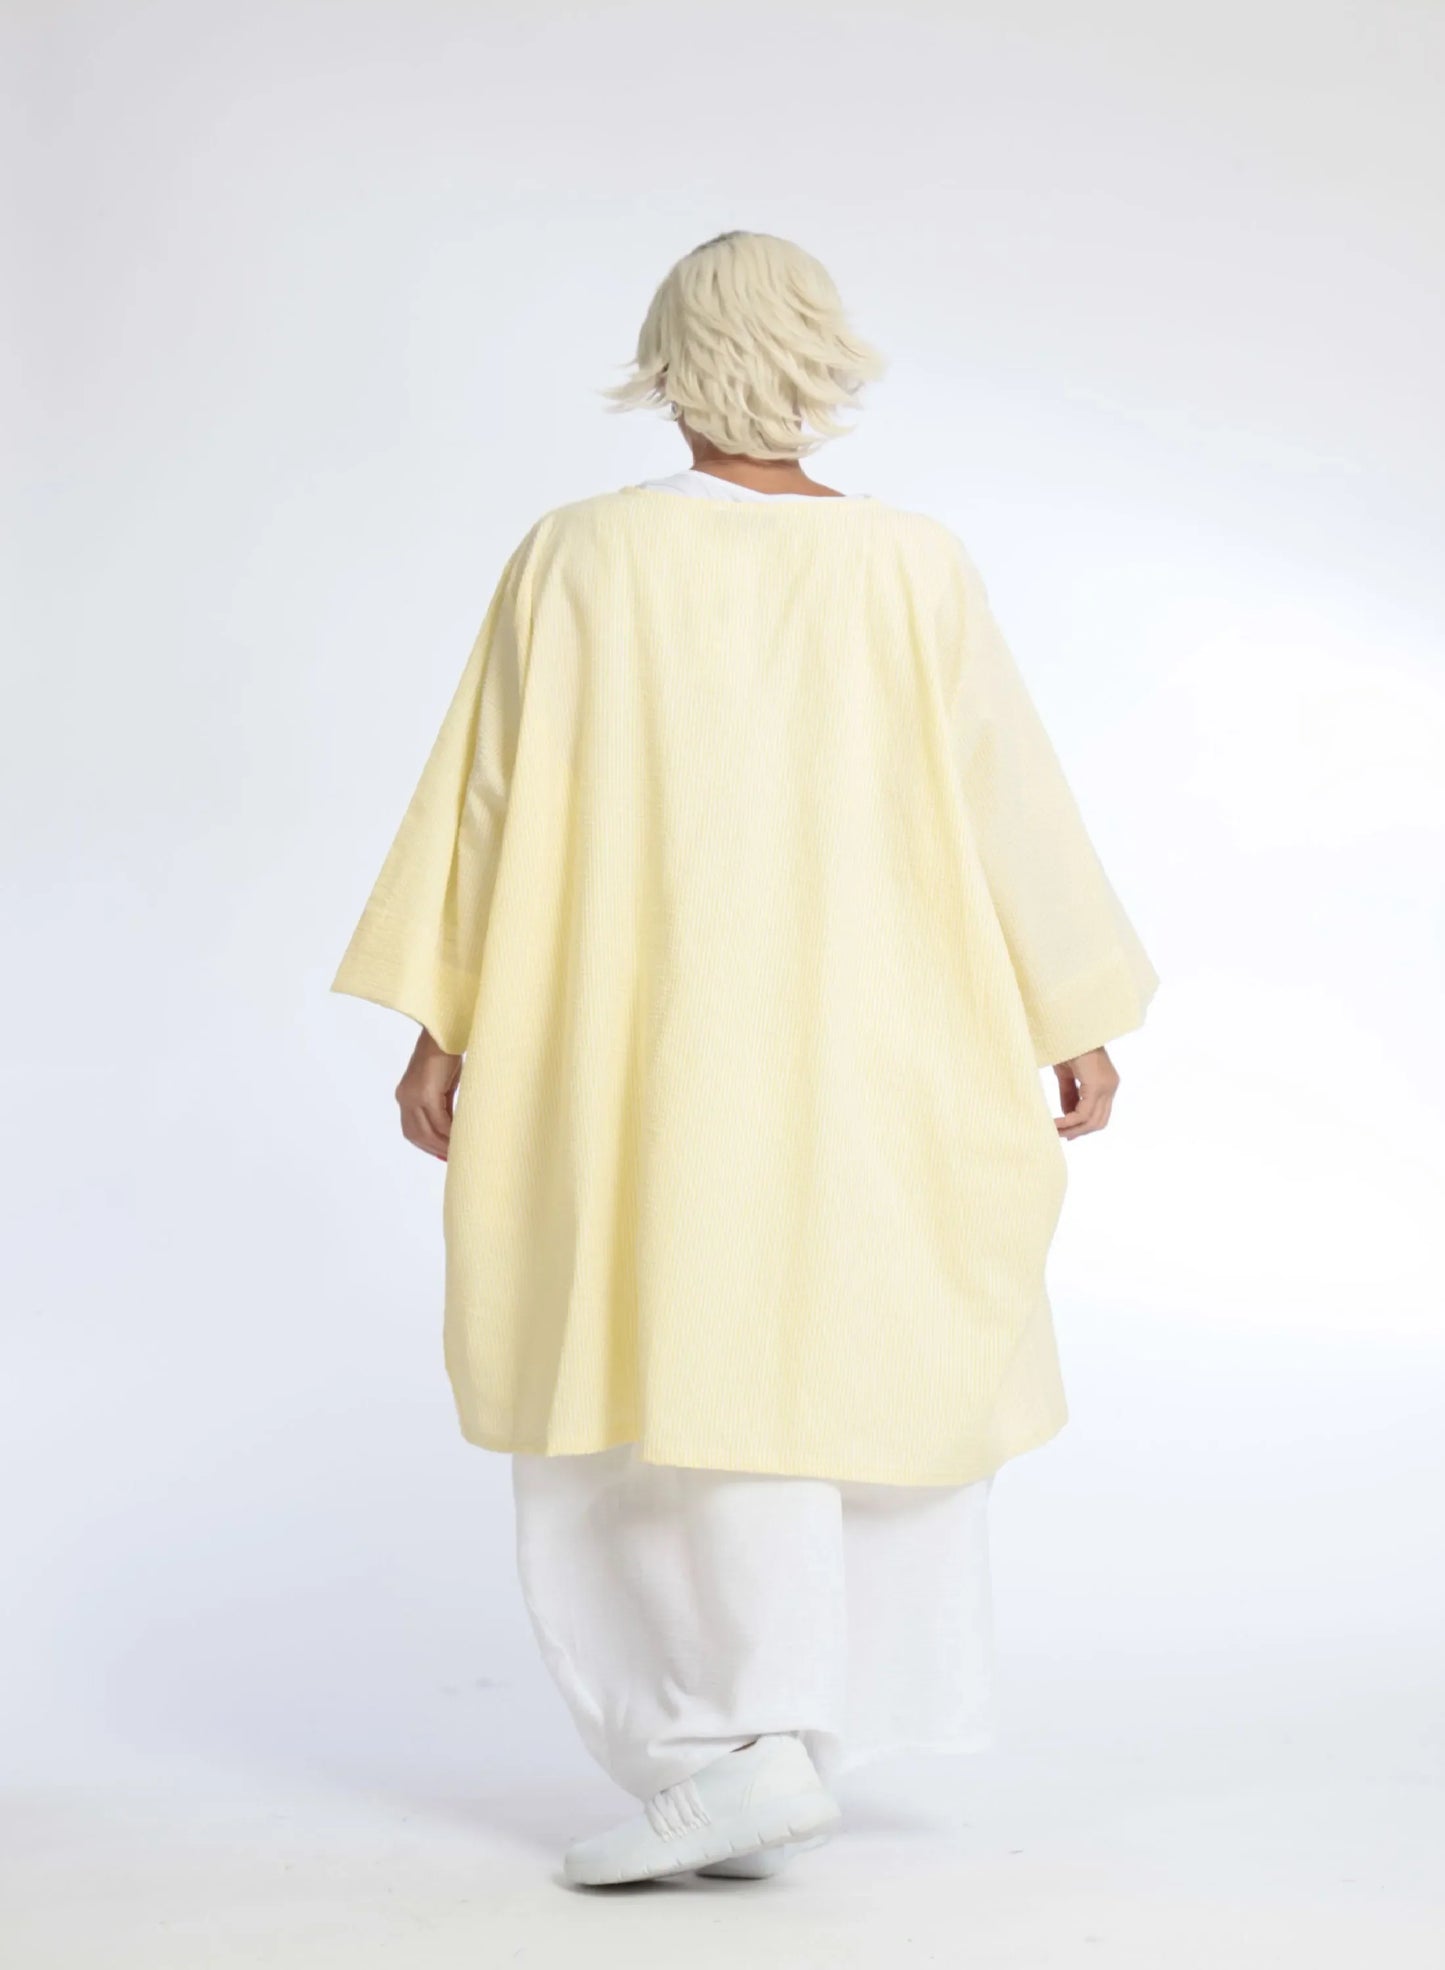 Sommer Bluse in A-Form aus weicher Seersucker Qualität, Tessa in Gelb